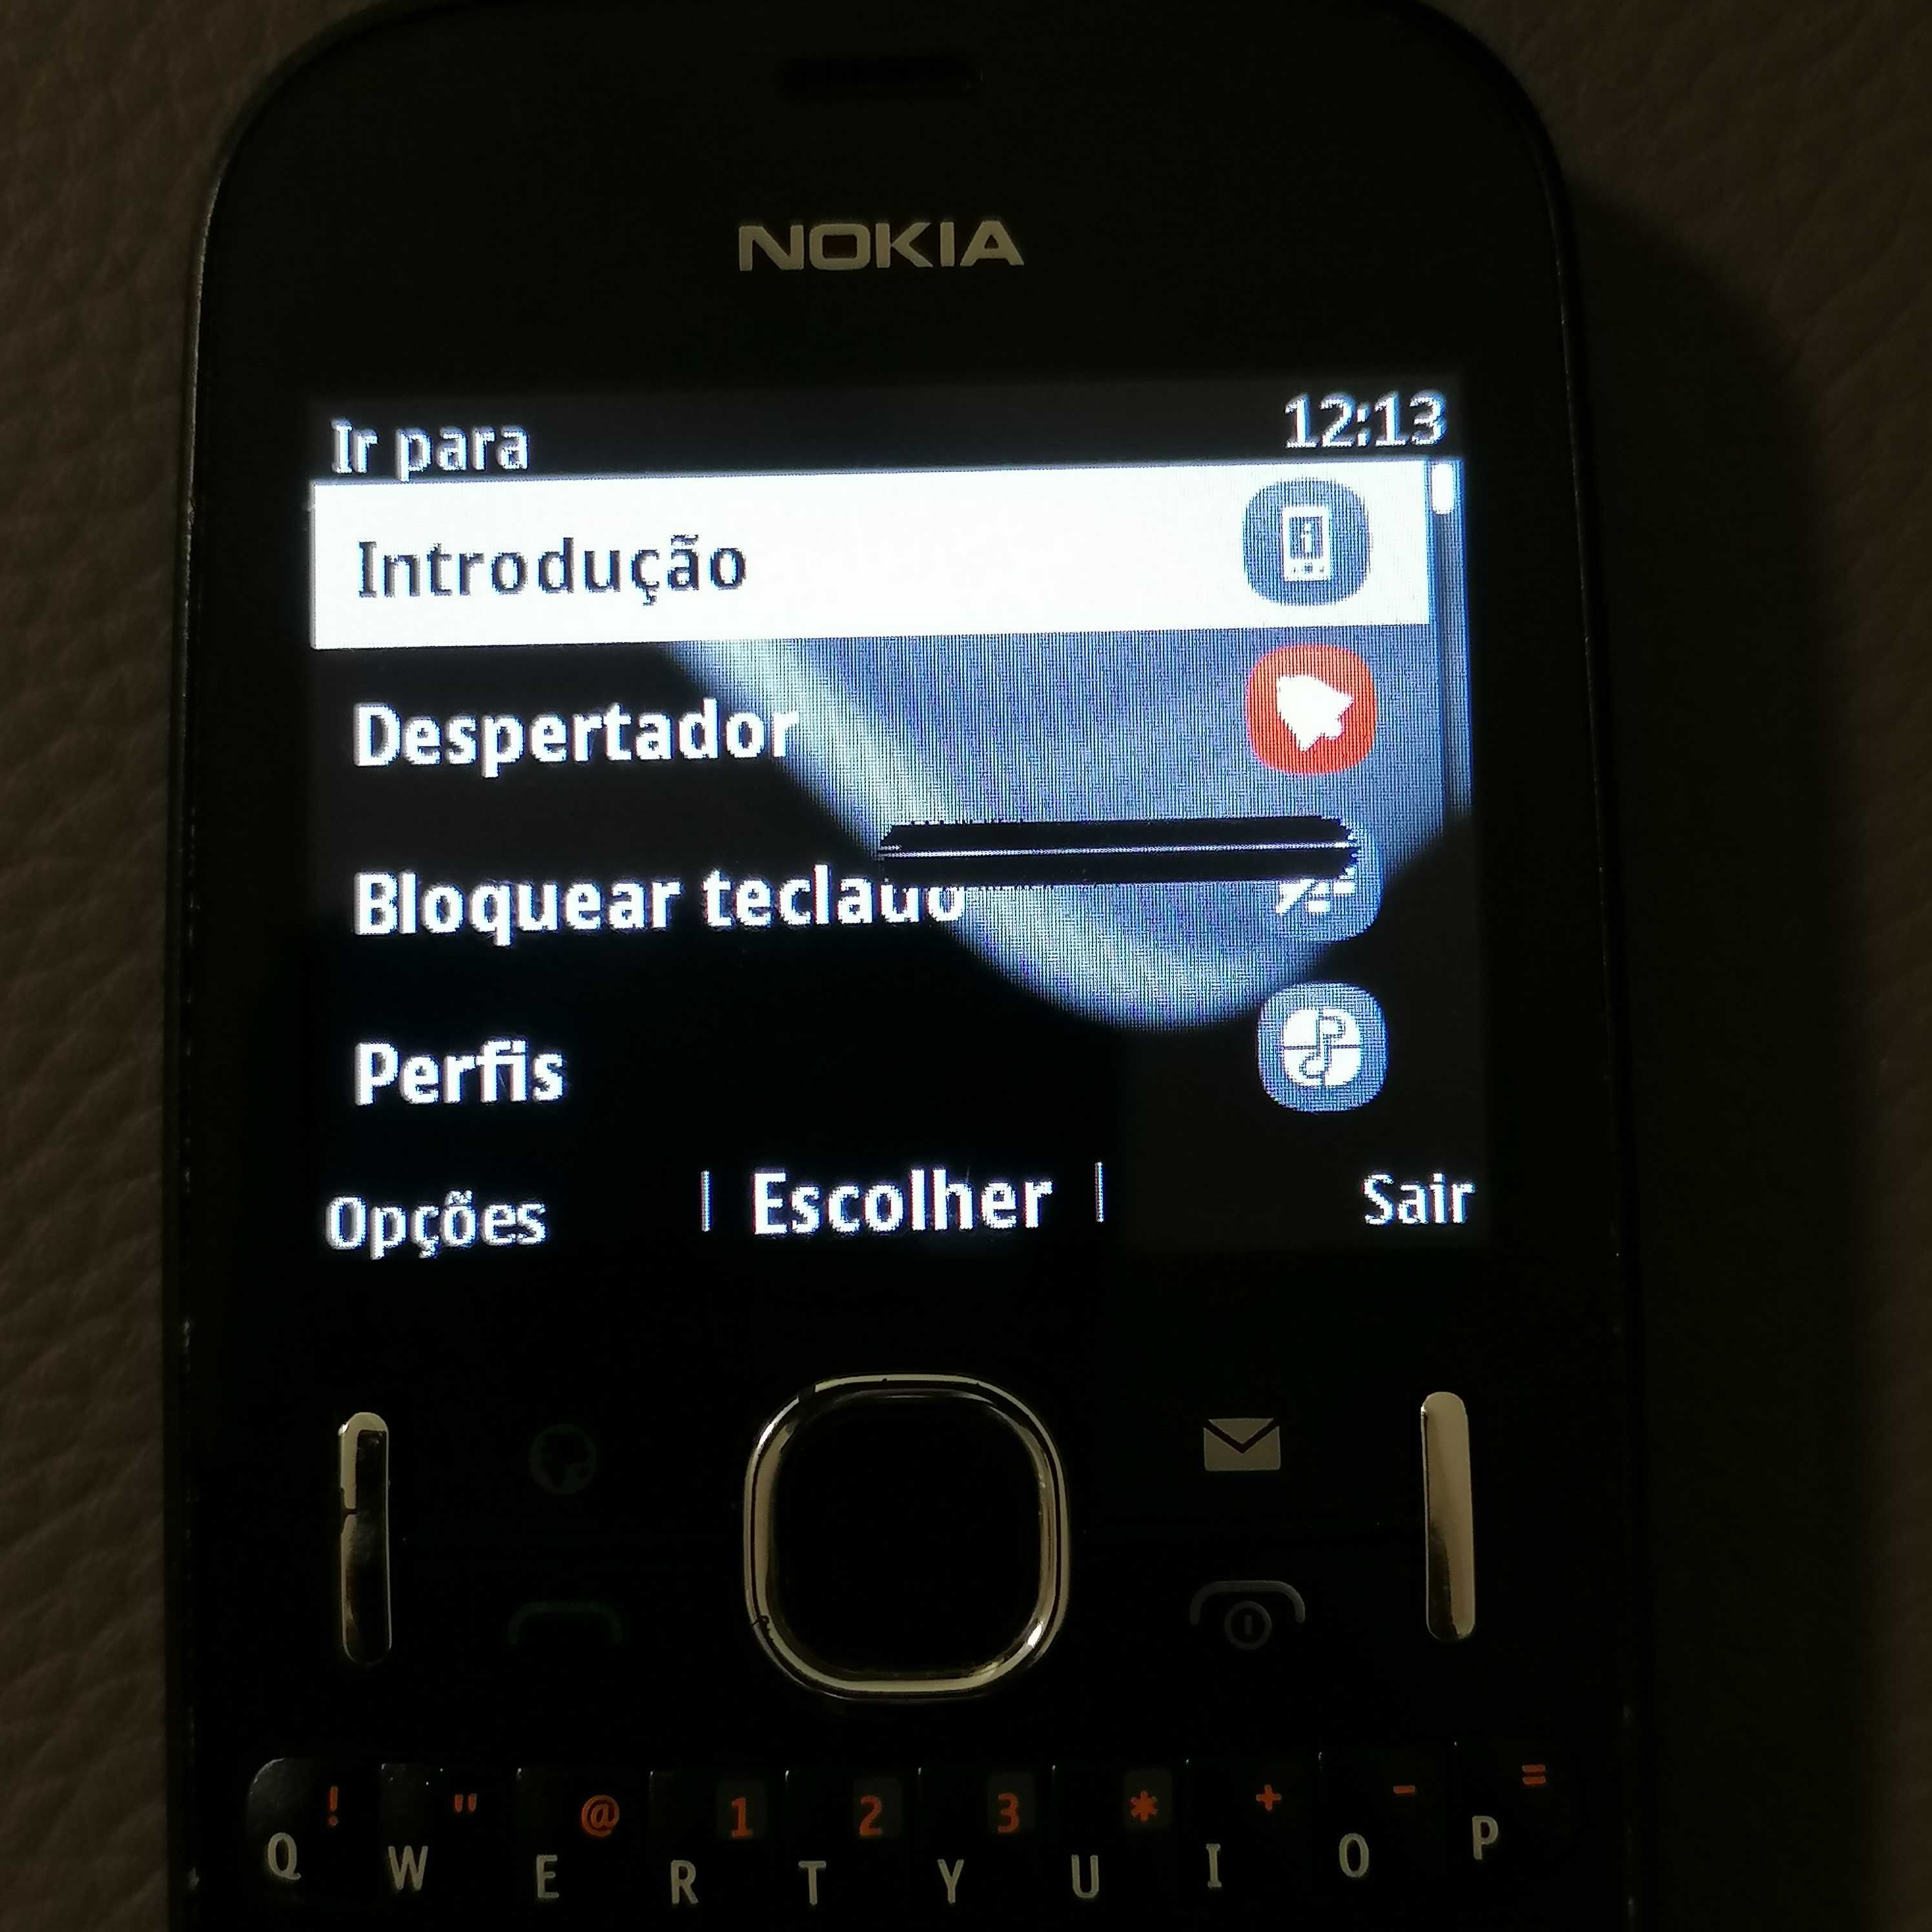 Telemóvel Nokia Asha 201 com carregador